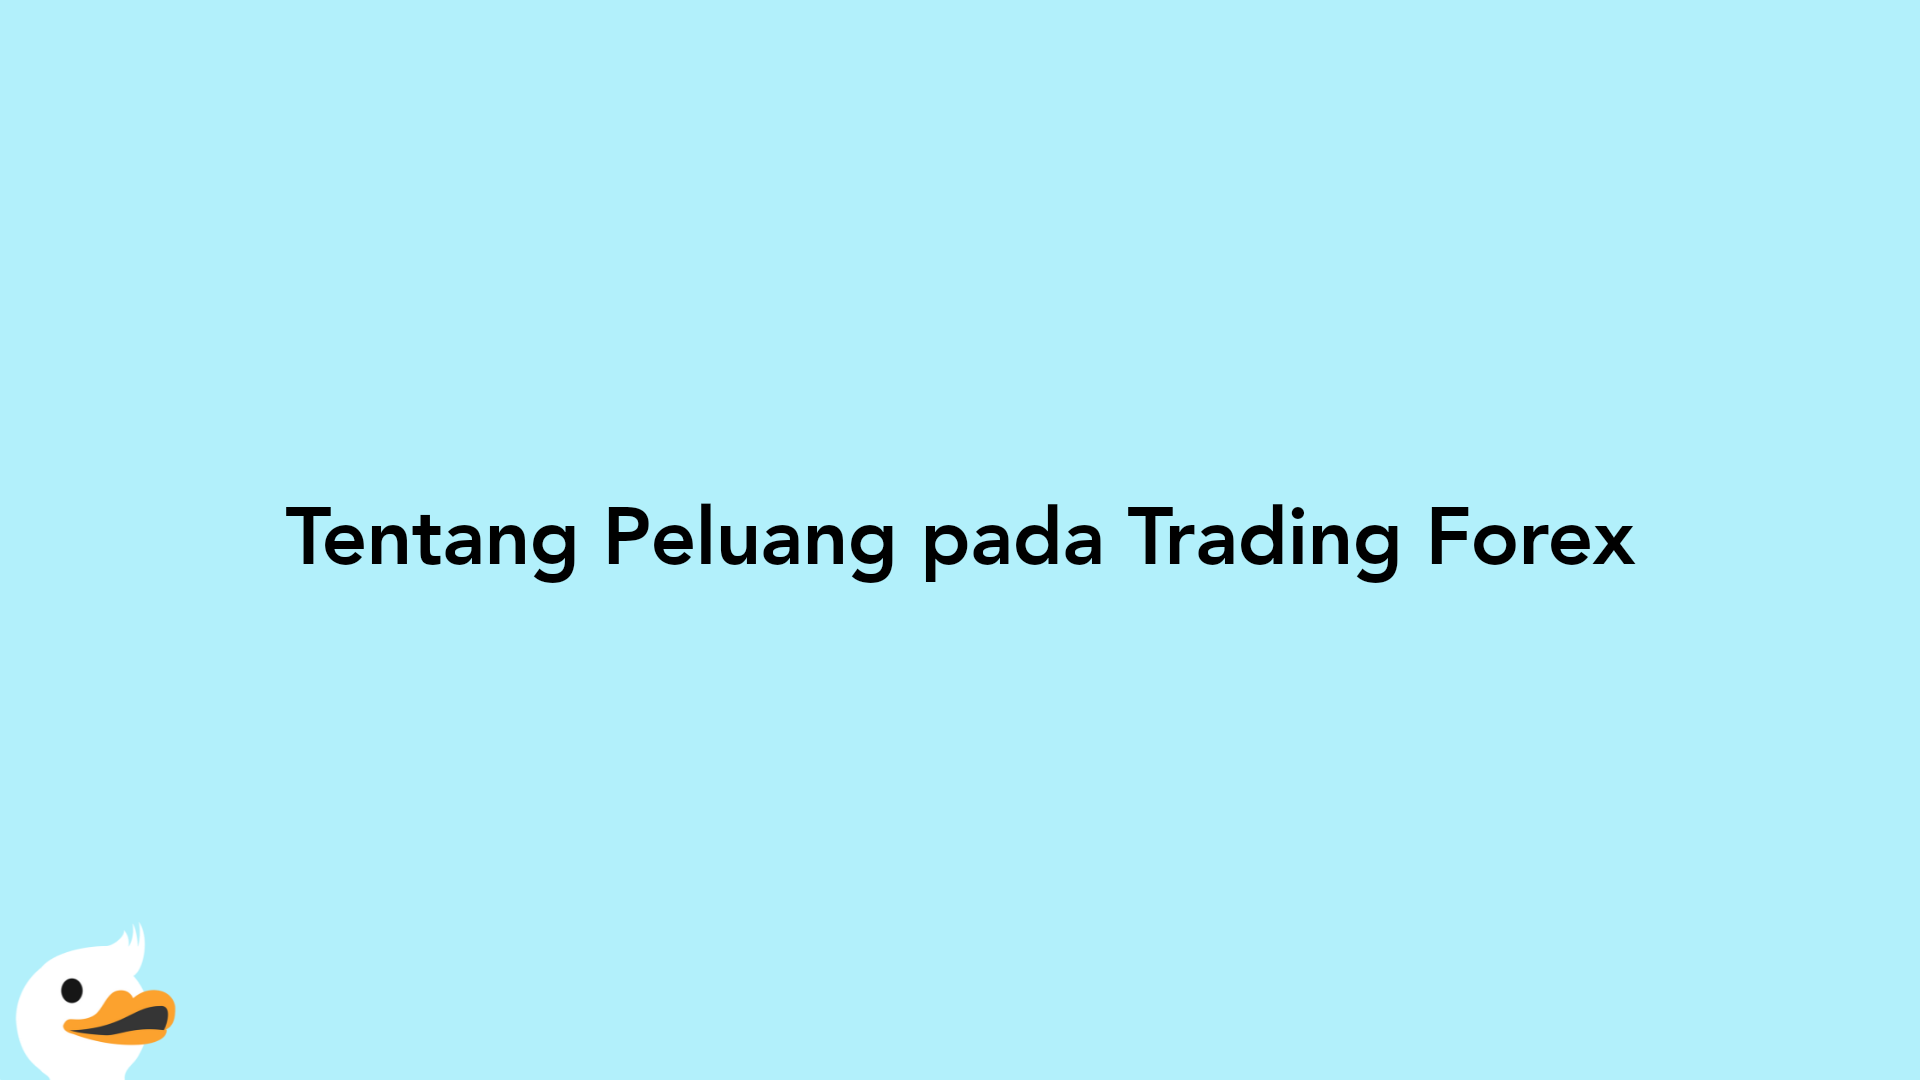 Tentang Peluang pada Trading Forex